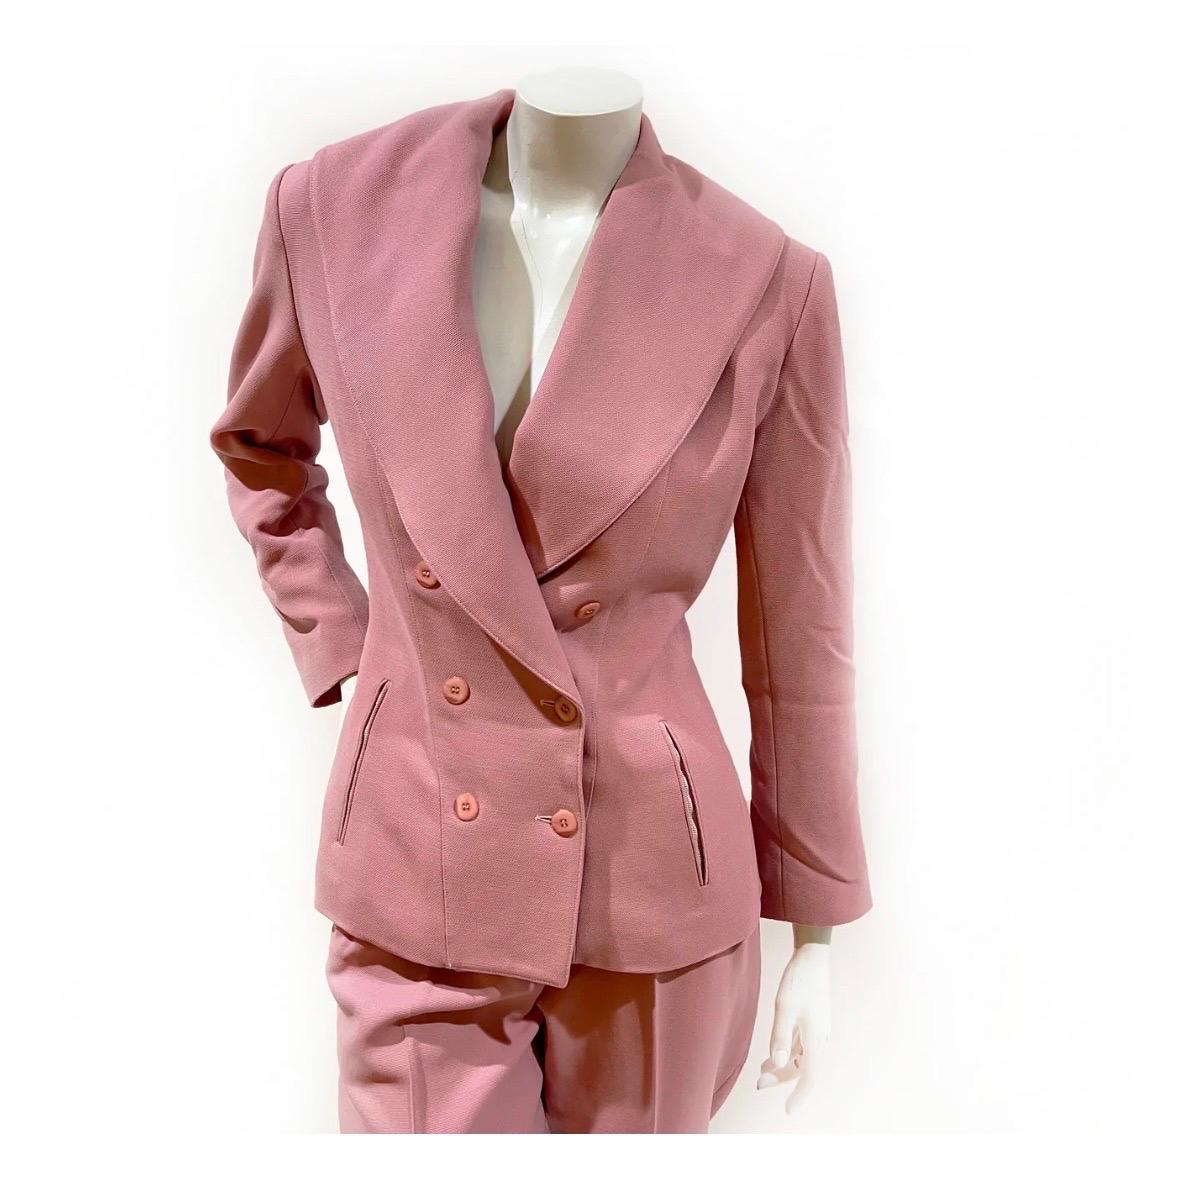 Combinaison rose d'Azzedine Alaia
Fabriqué en France
Circa 1990
Veste à double boutonnage 
Pantalon plissé à taille haute
Deux poches zippées sur la veste et le pantalon 
100% laine (doublure : 57% viscose 43% acétate)
Excellent état, prélavé avec